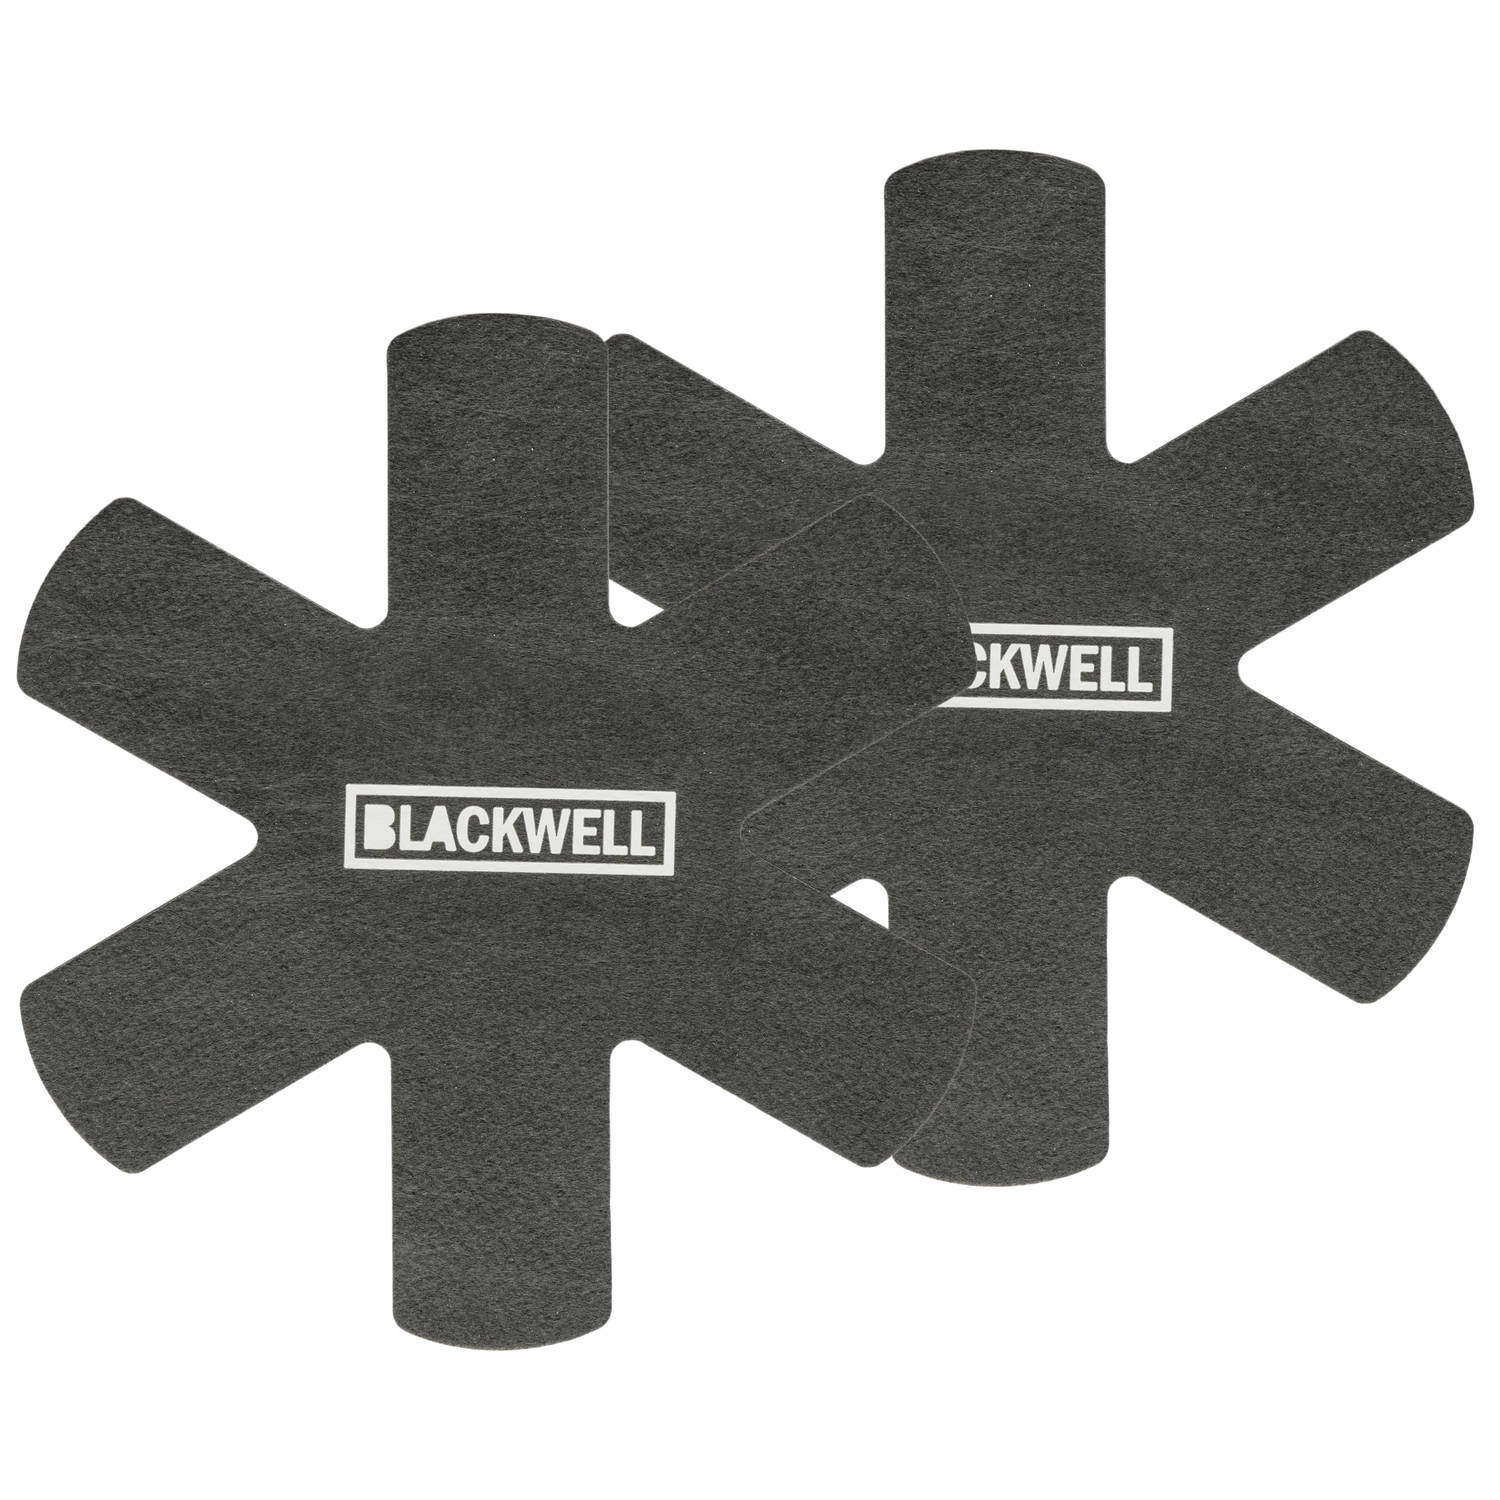 Blackwell Panbeschermers Zwart ø 38 cm - 2 stuks